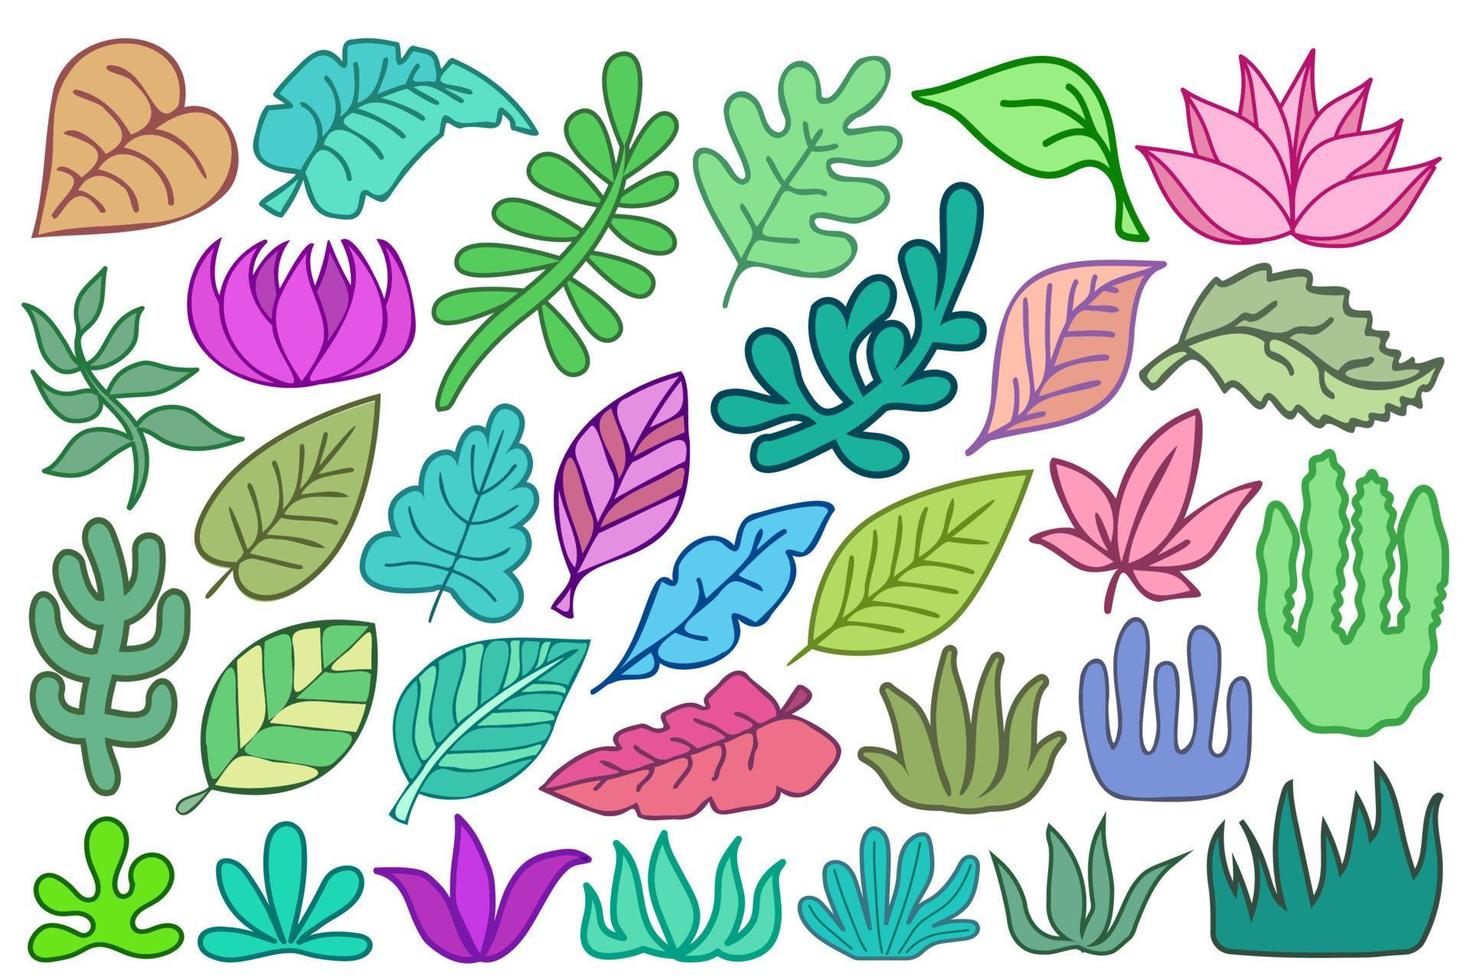 herbe, feuilles, branches, fleurs isolés sur fond blanc. éléments de conception de plantes botaniques, formes abstraites et stylisées, ensemble vectoriel d'icônes colorées.